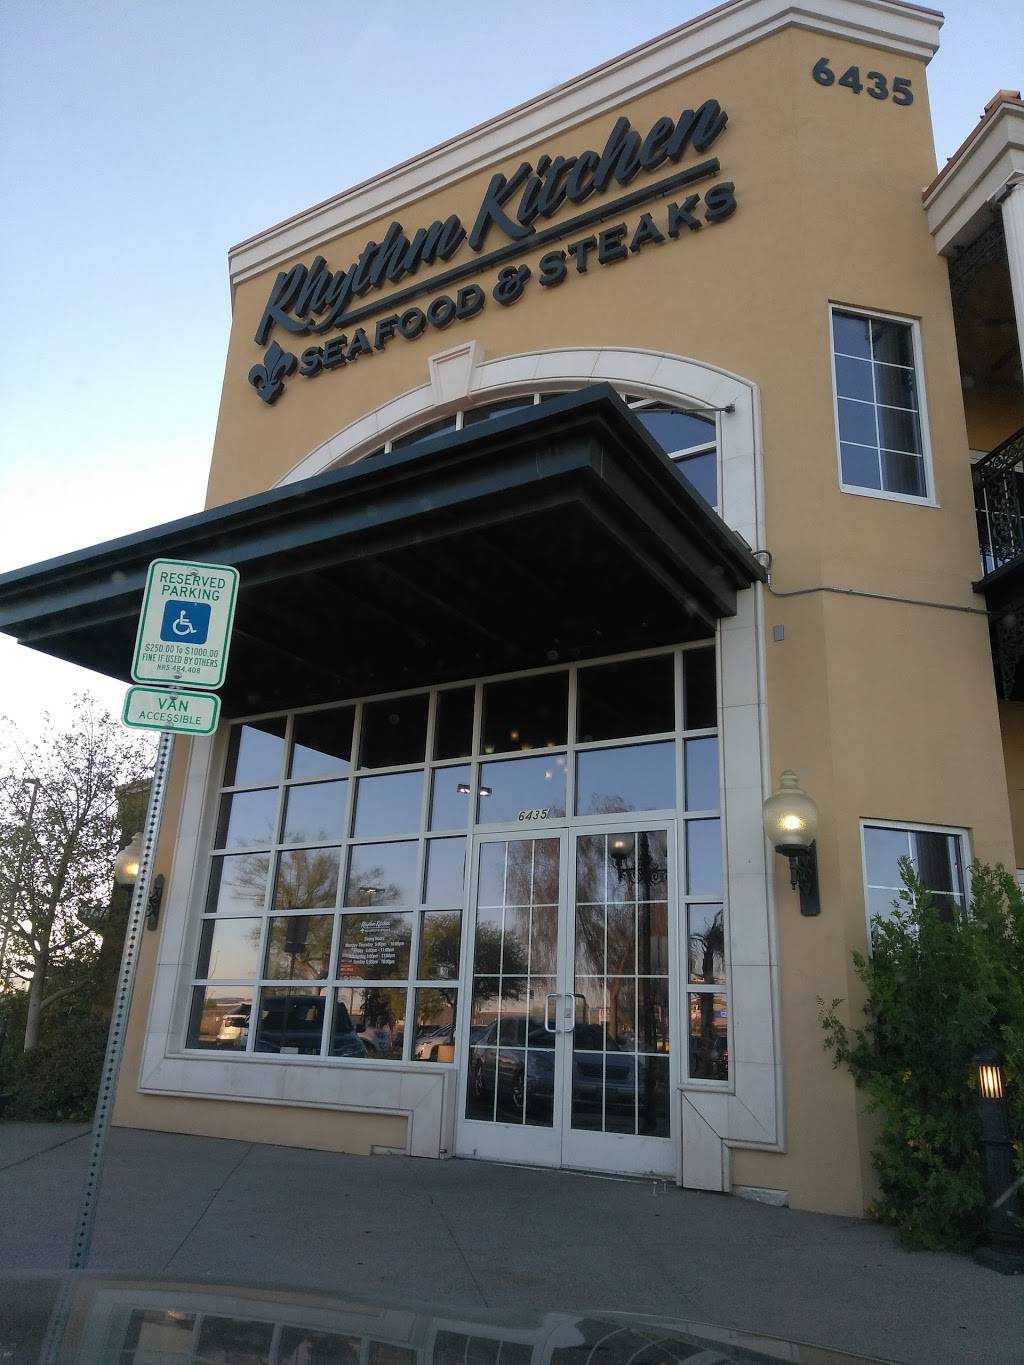 Rhythm Kitchen Seafood & Steak | restaurant | 6435 S Decatur Blvd, Las Vegas, NV 89118, USA | 7027678438 OR +1 702-767-8438